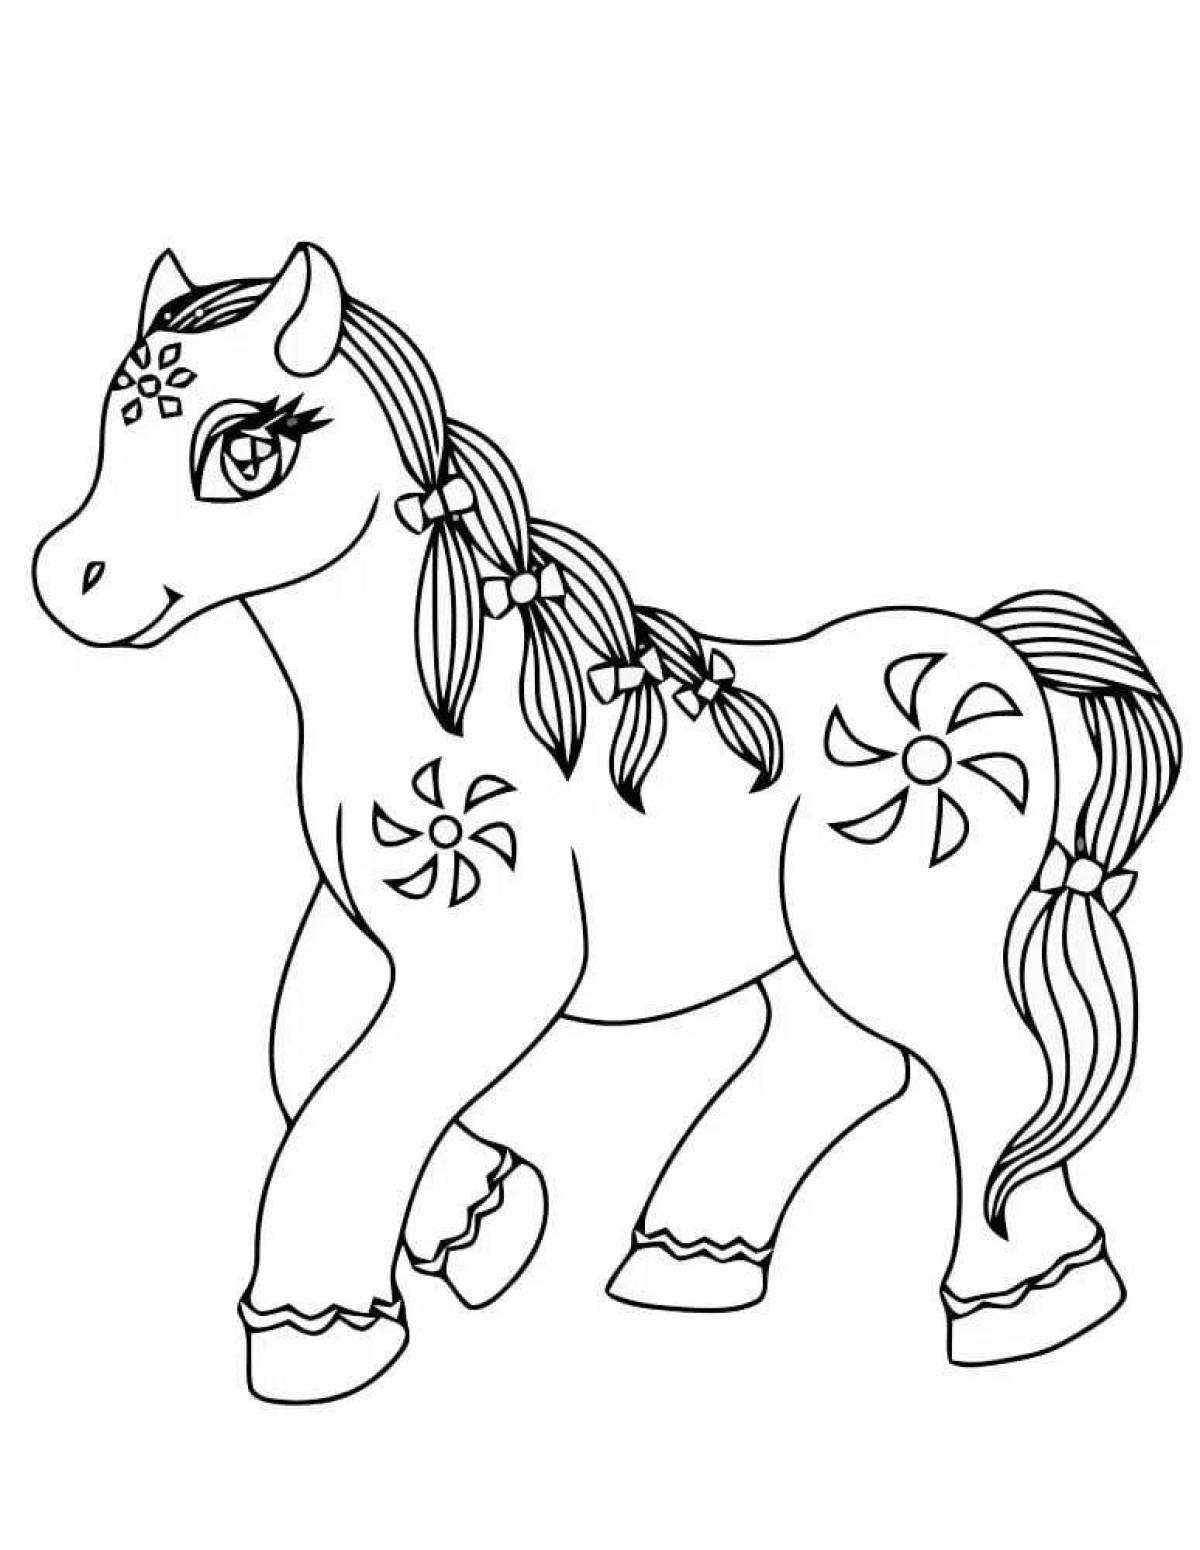 раскраски Маленький пони - My Little Pony раскраска